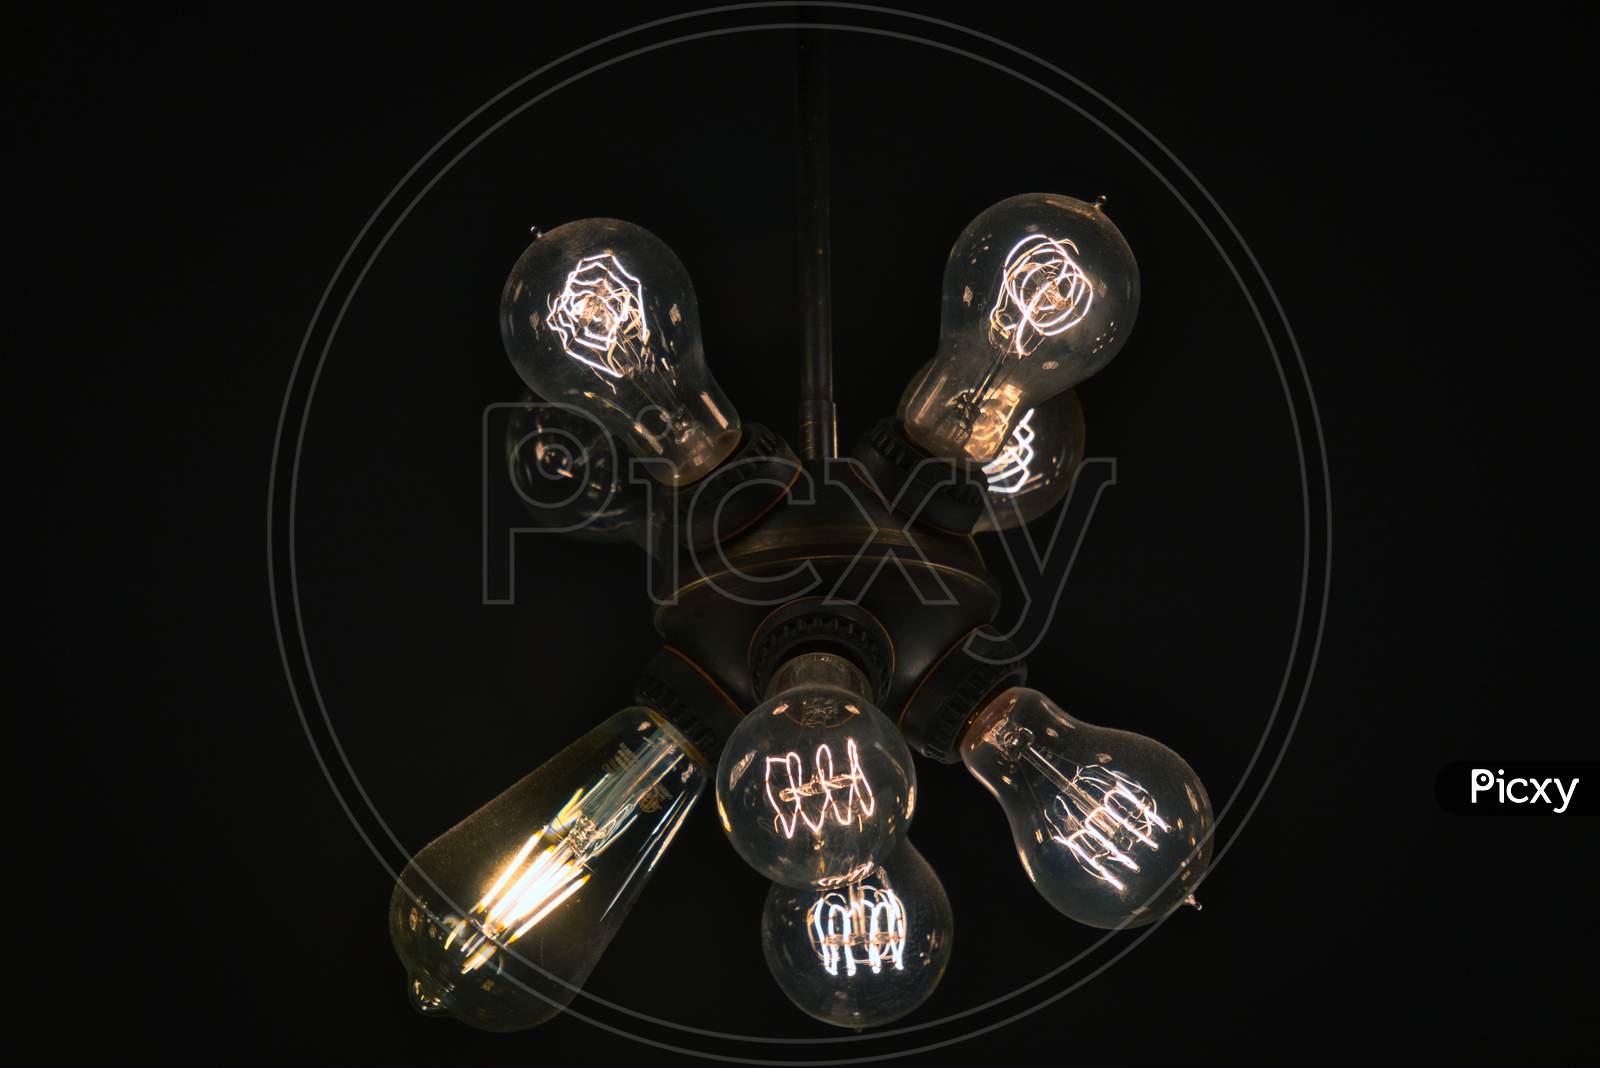 Super dimmed lights via candescent bulb